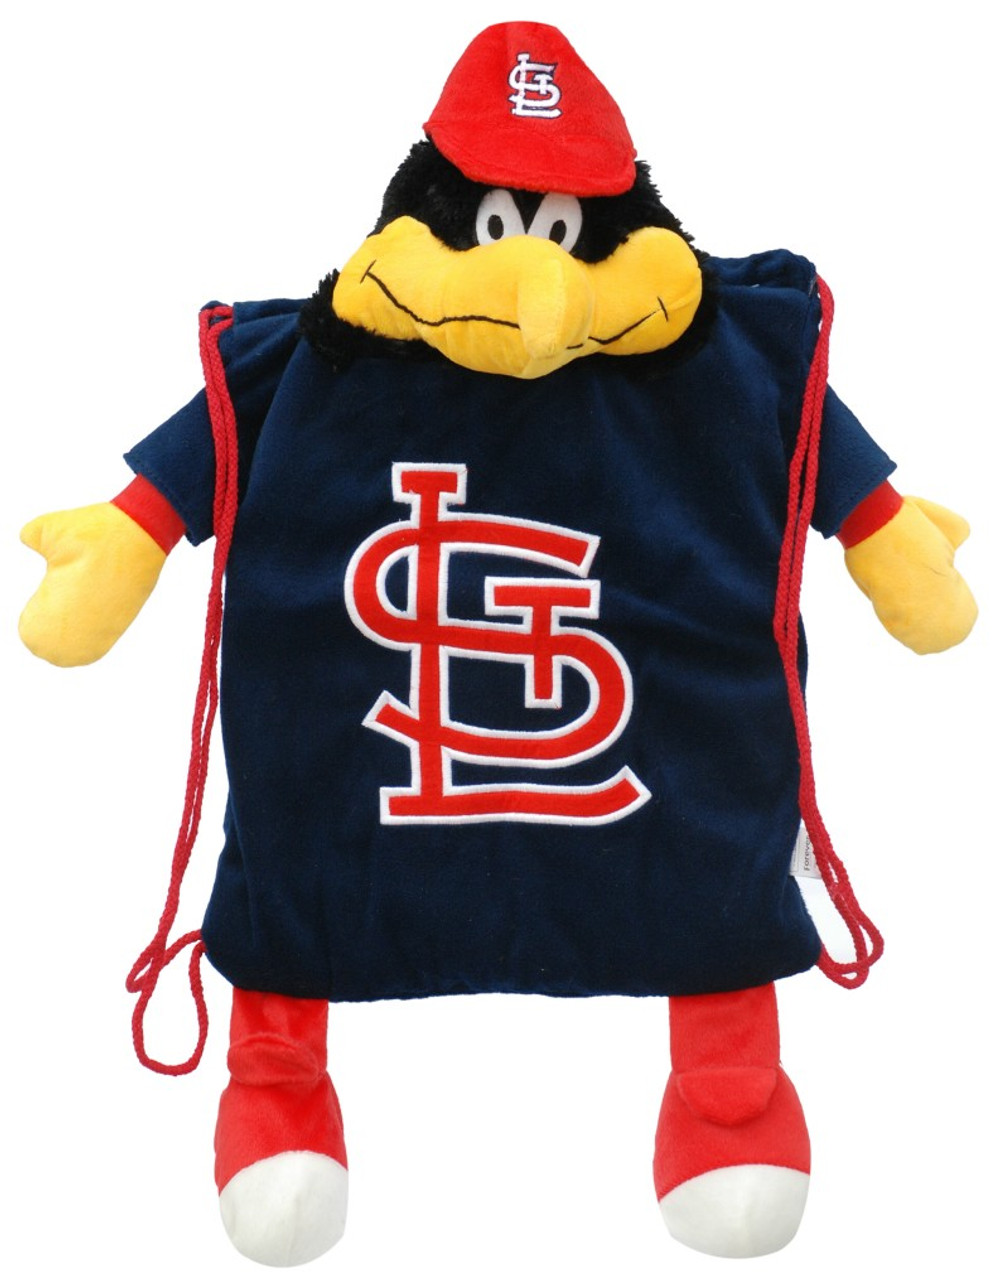  Your Fan Shop for St. Louis Cardinals